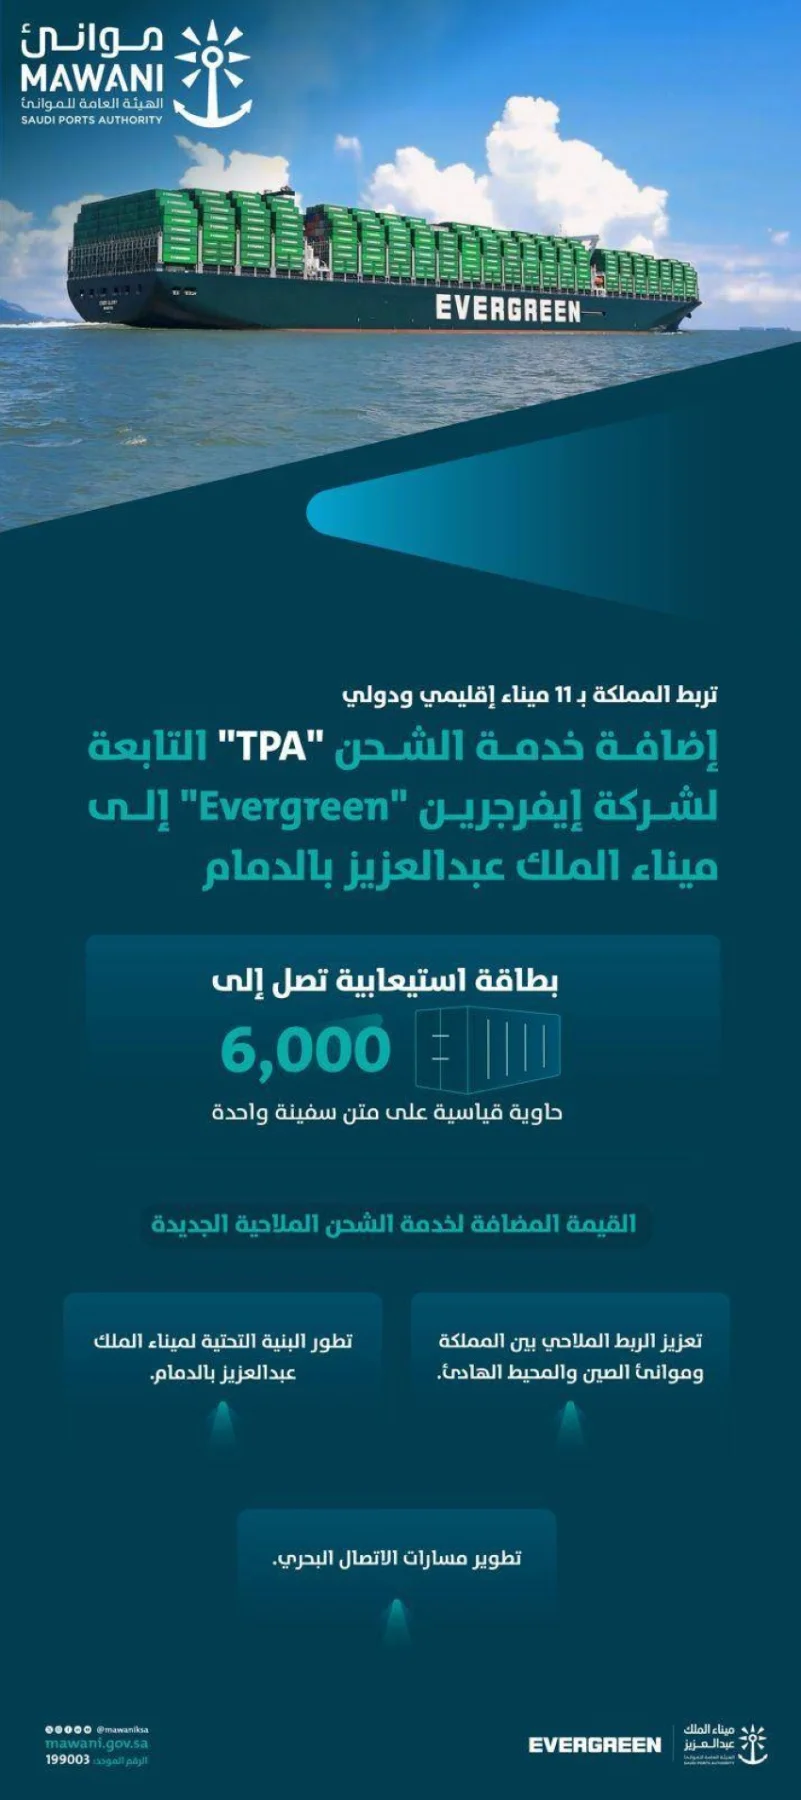 موانئ": إضافة خدمة الشحن "tpa" إلى ميناء الملك عبدالعزيز بالدمام